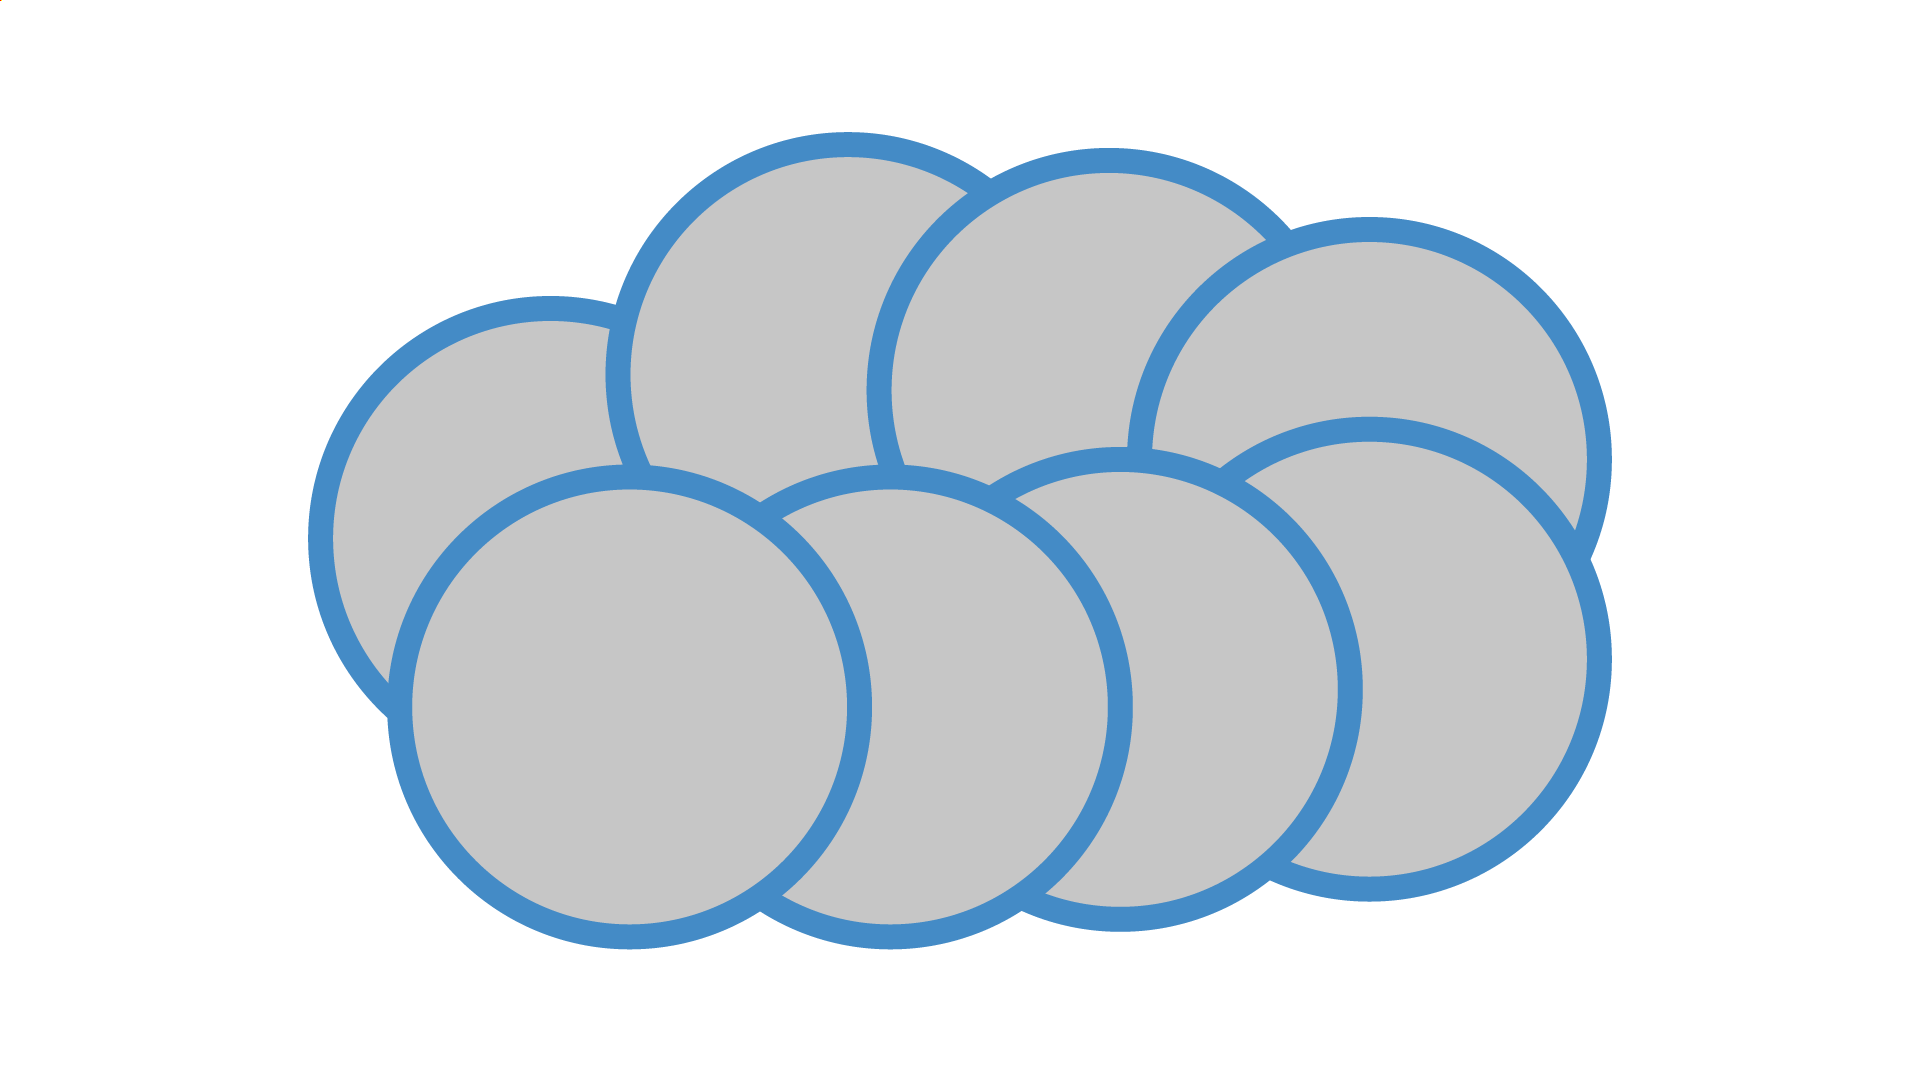 雲の形に見えるように円形を並べる